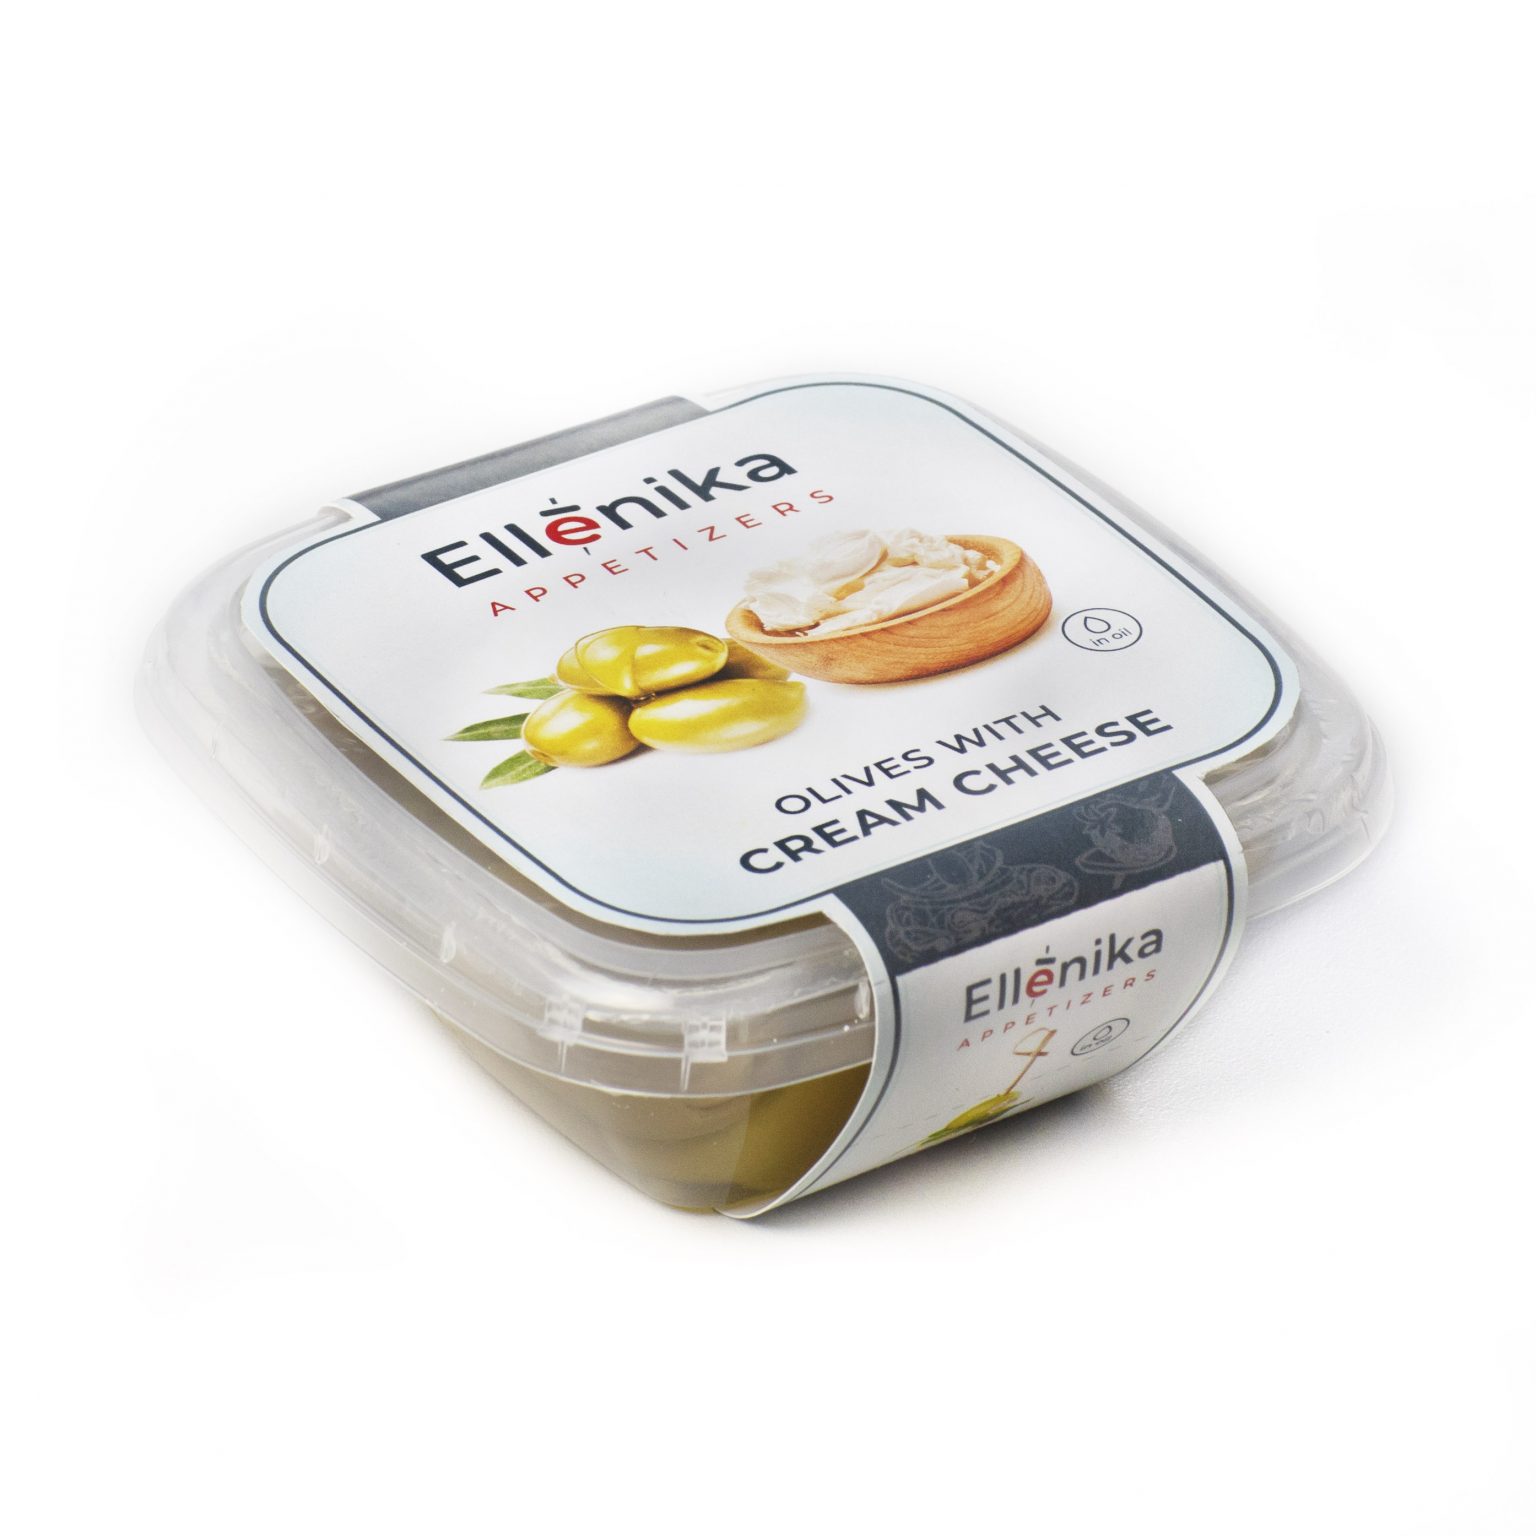 Оливки Ellenika фаршированные сливочным сыром в масле 130 г оливки ellenika фаршированные сливочным сыром в масле 130 г